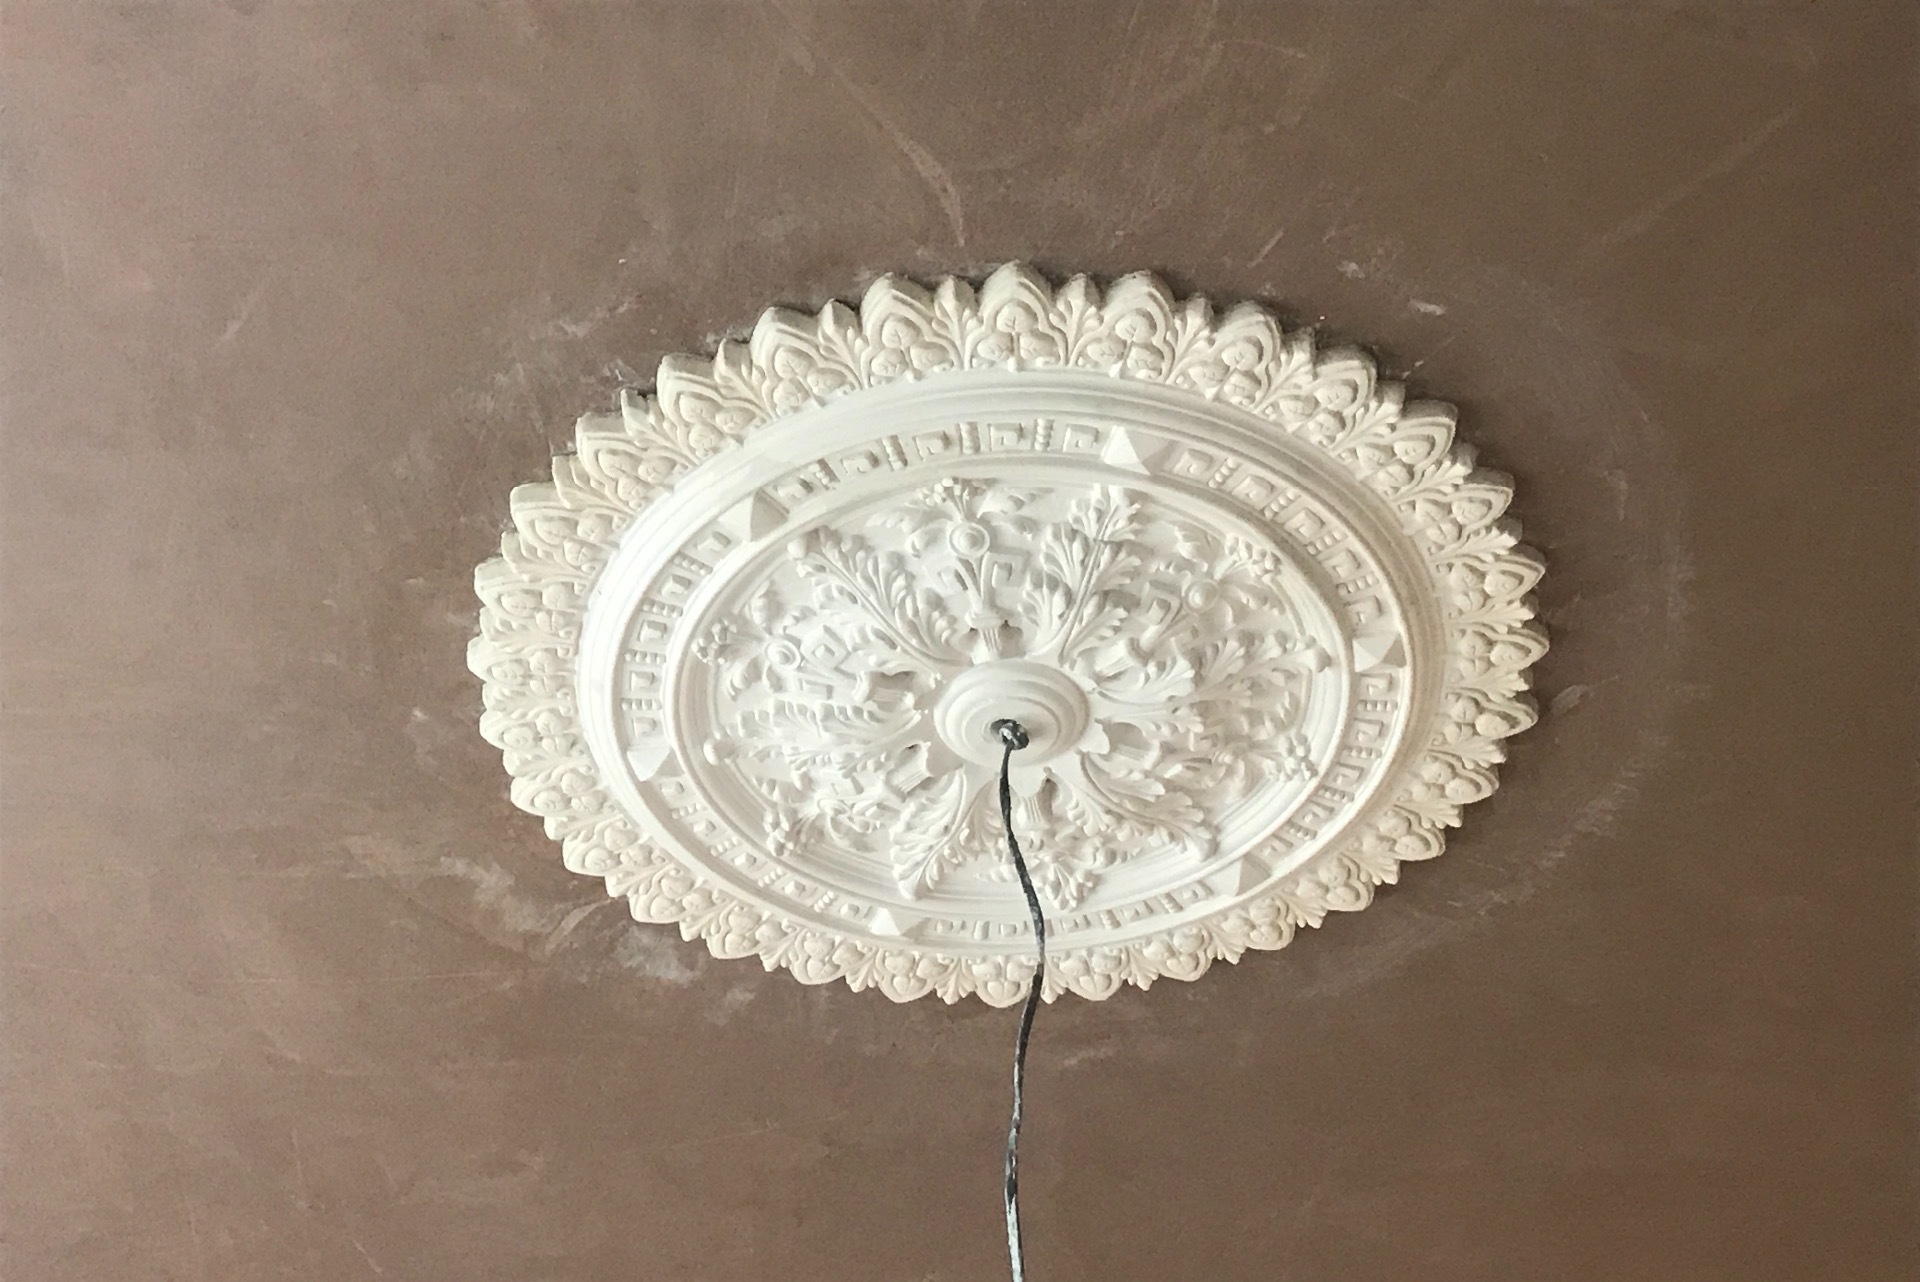 Plaster ceiling rose